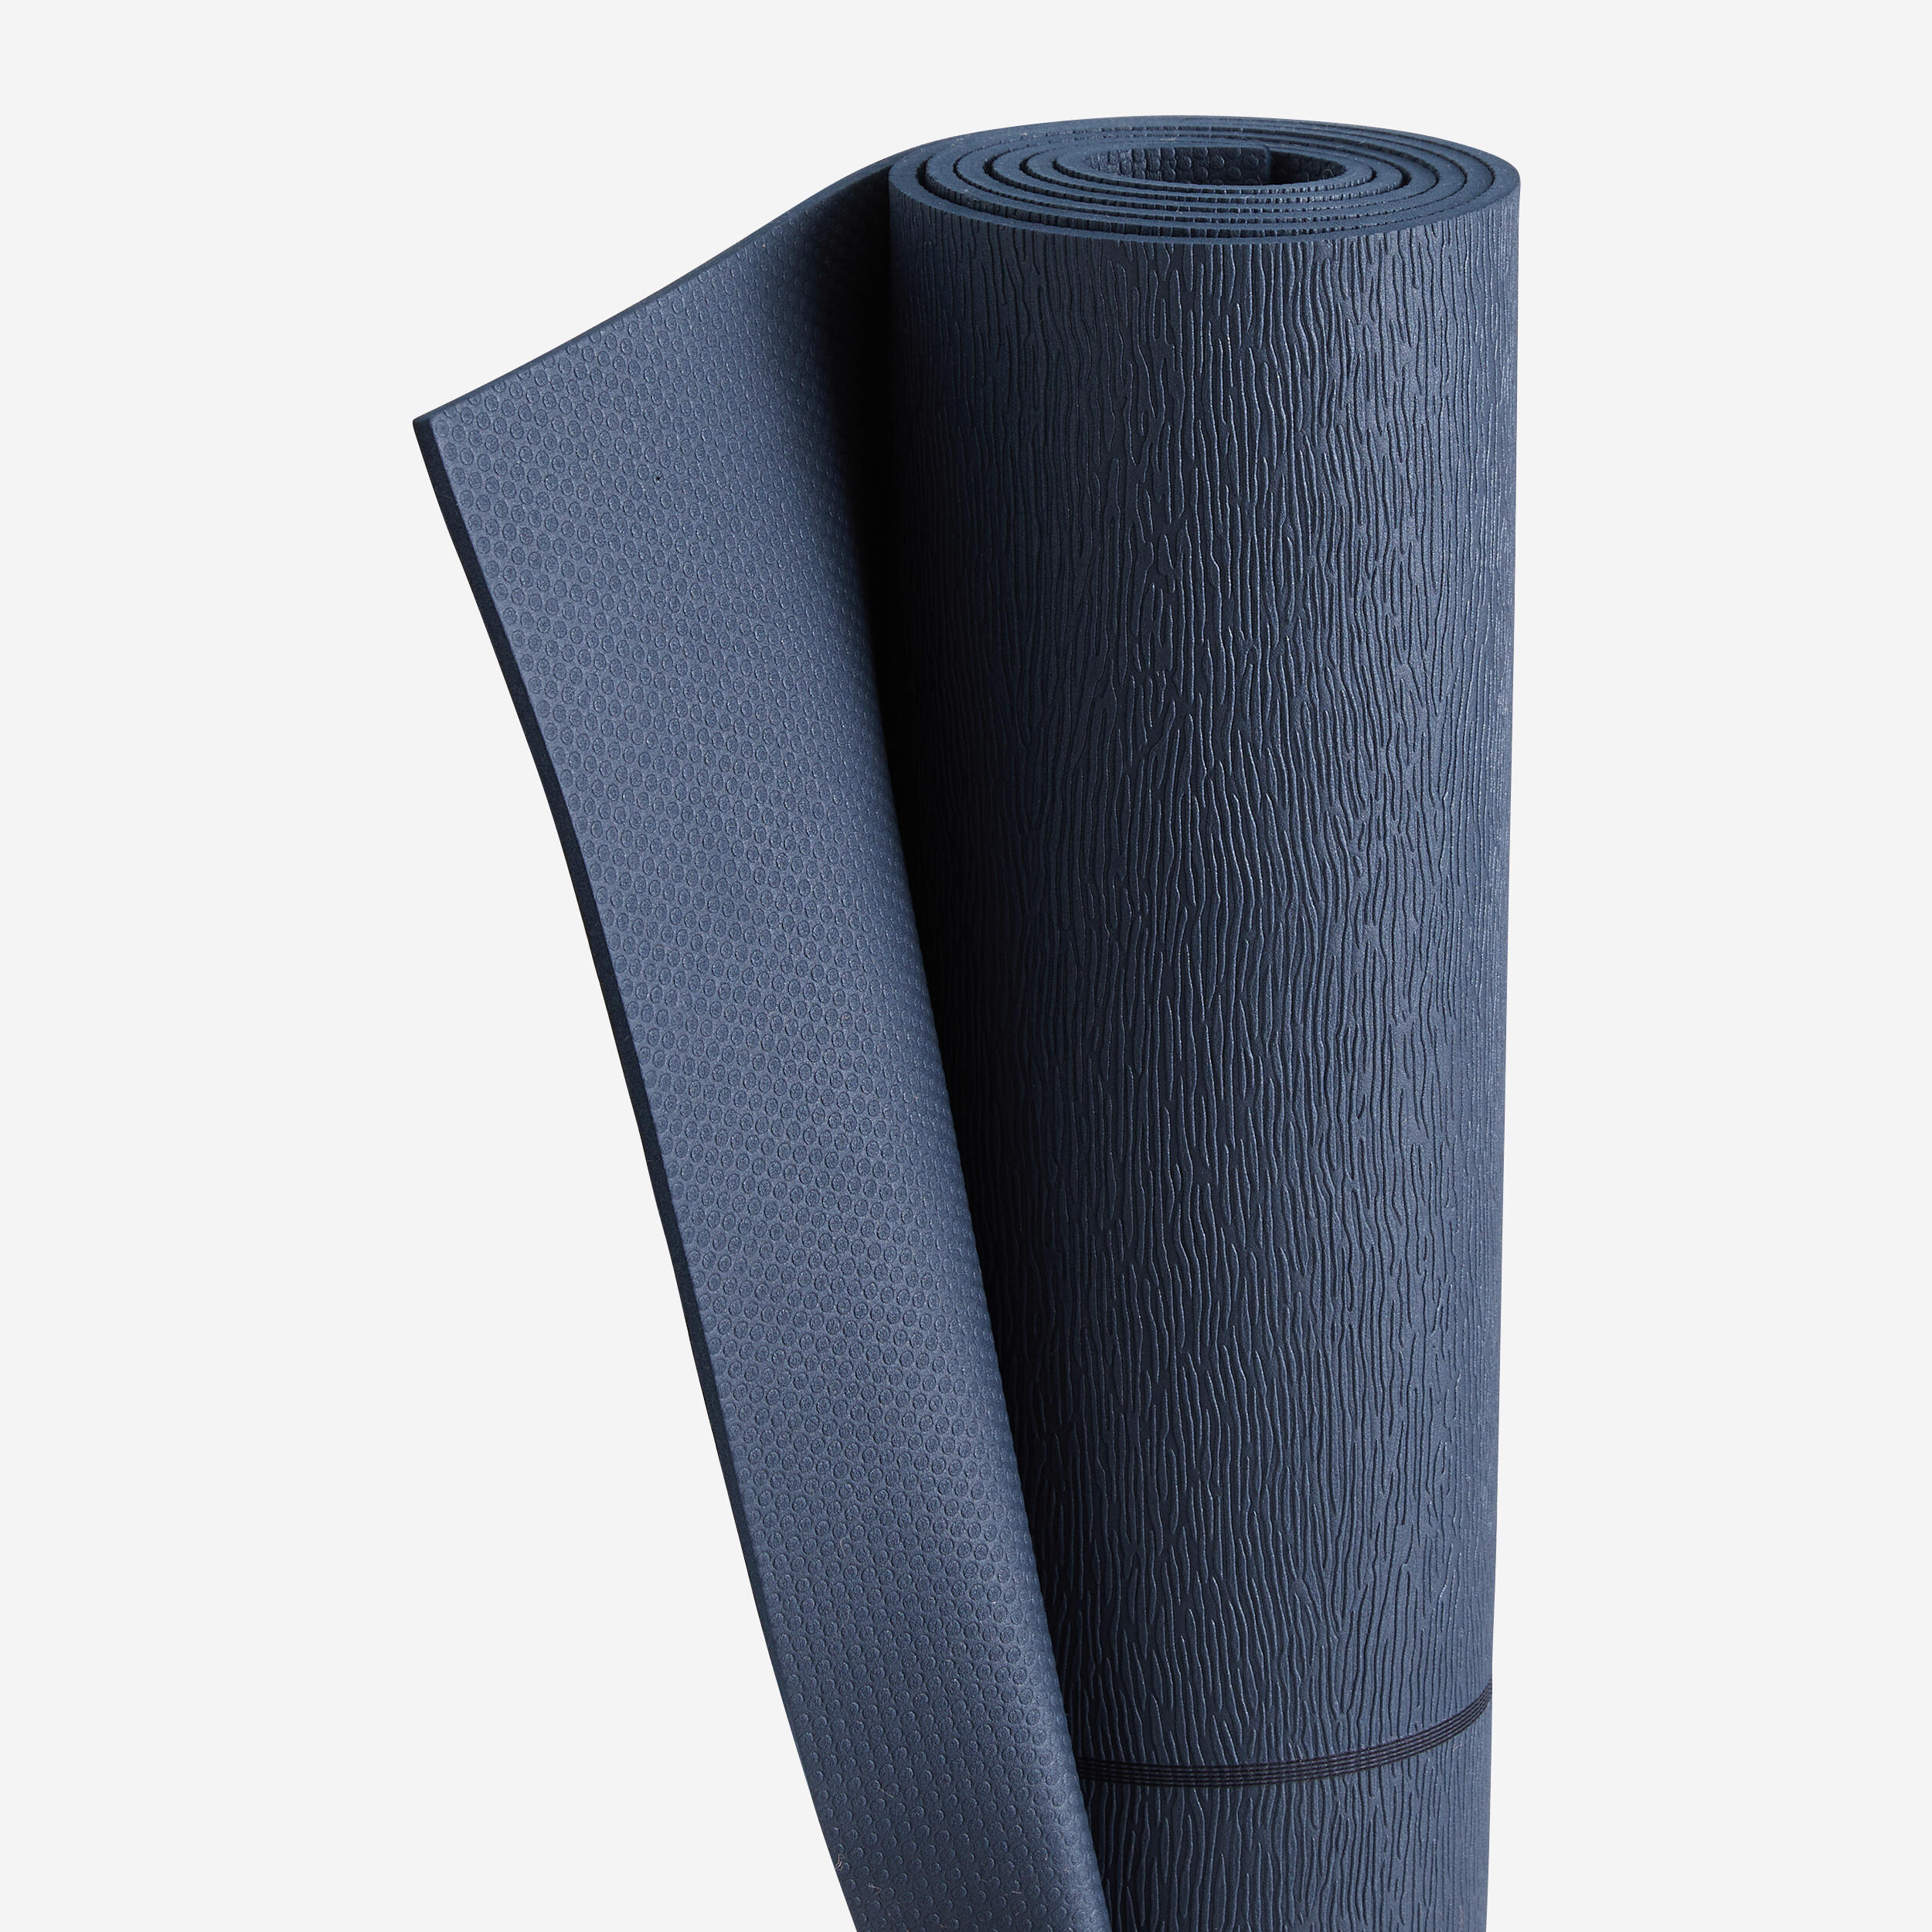 Beginner Yoga Mat 180 cm ⨯ 59 cm ⨯ 5 mm 4/4